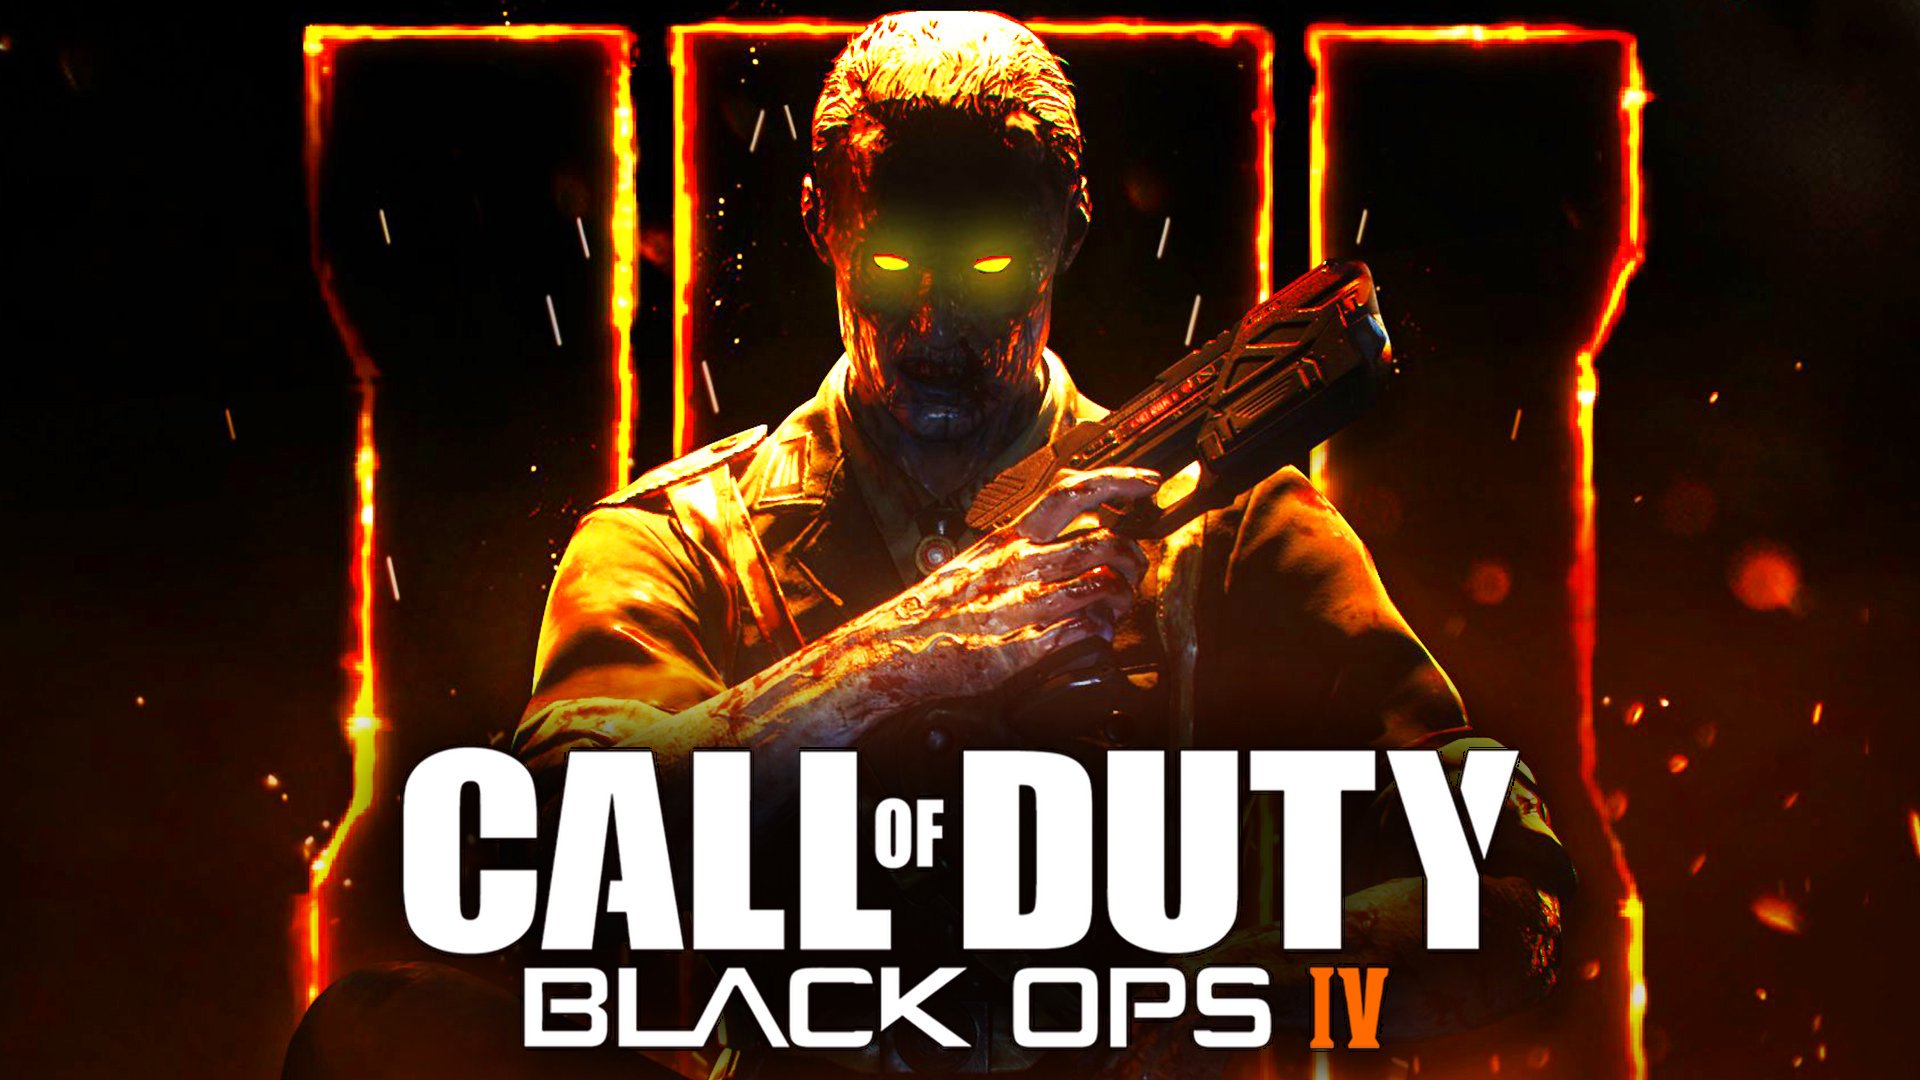 Yeni Call Of Duty 4 Black Ops 4 Geliyor